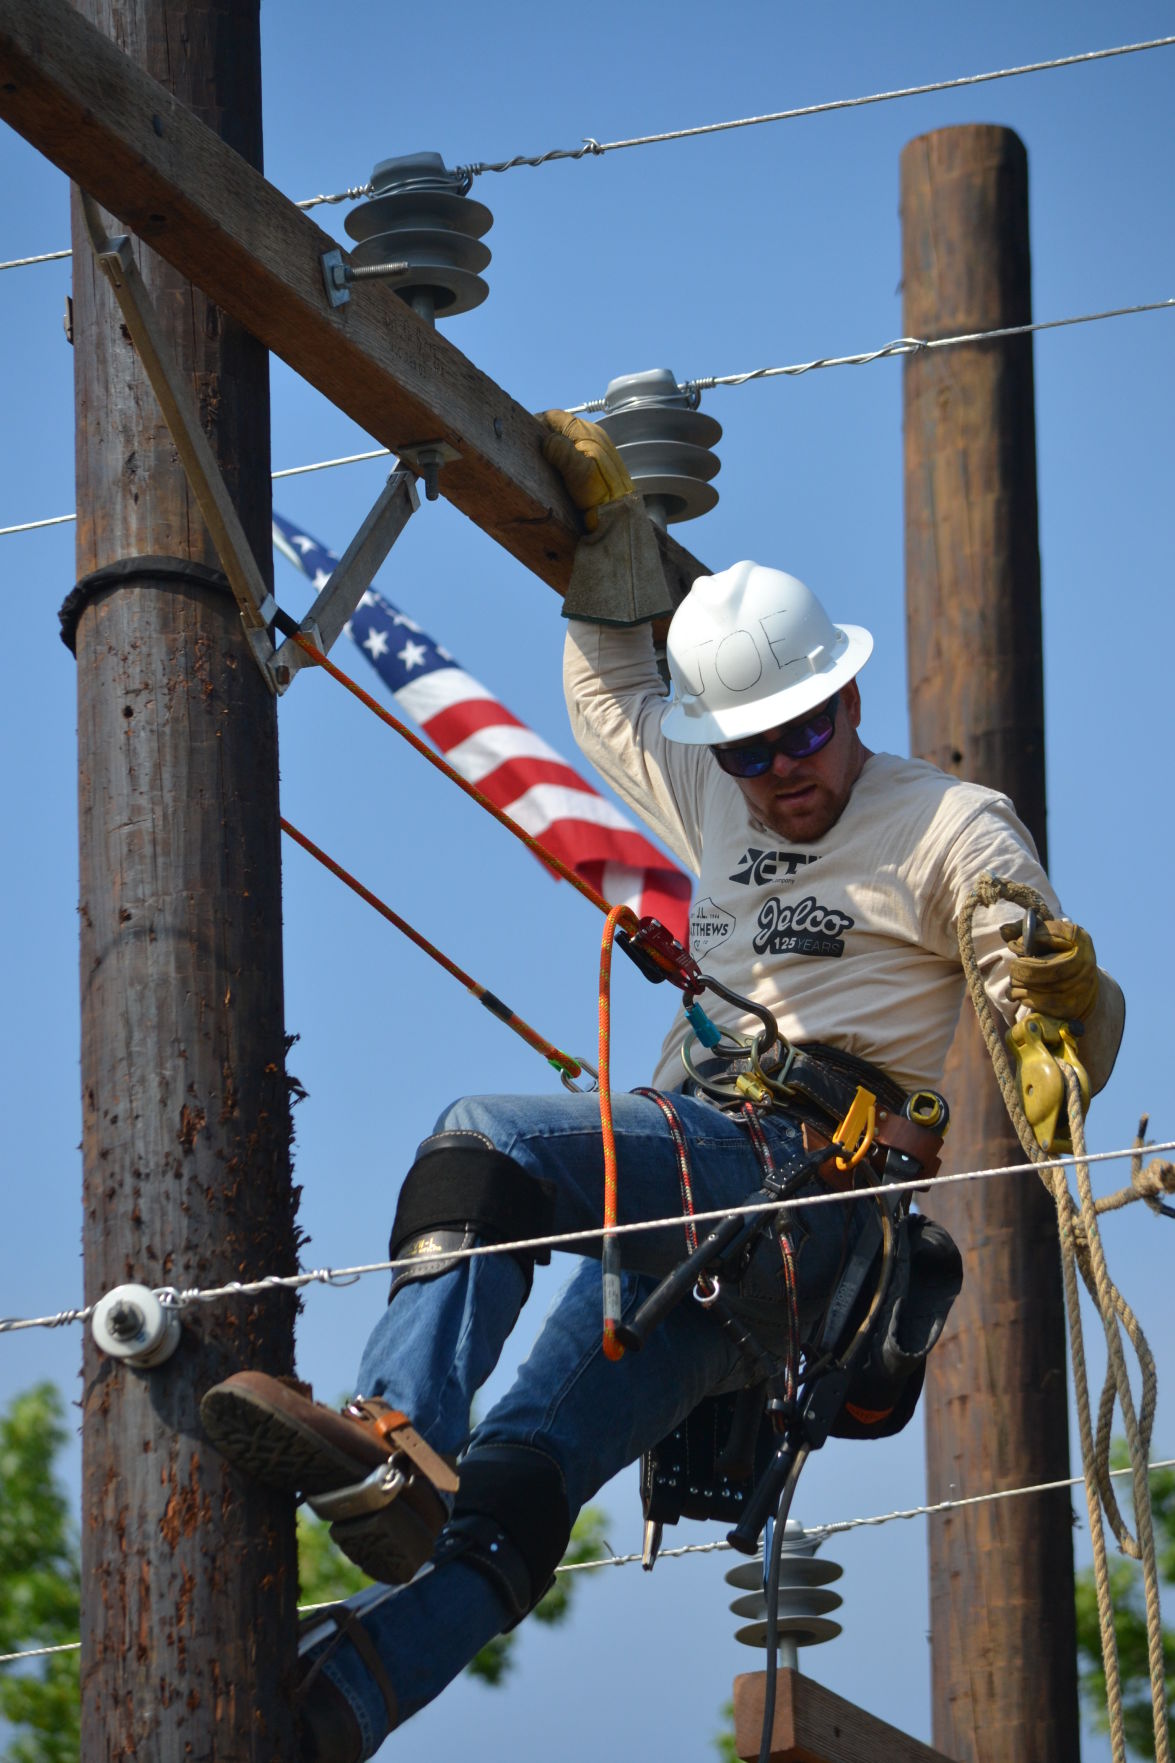 Powerline lineman jobs in texas